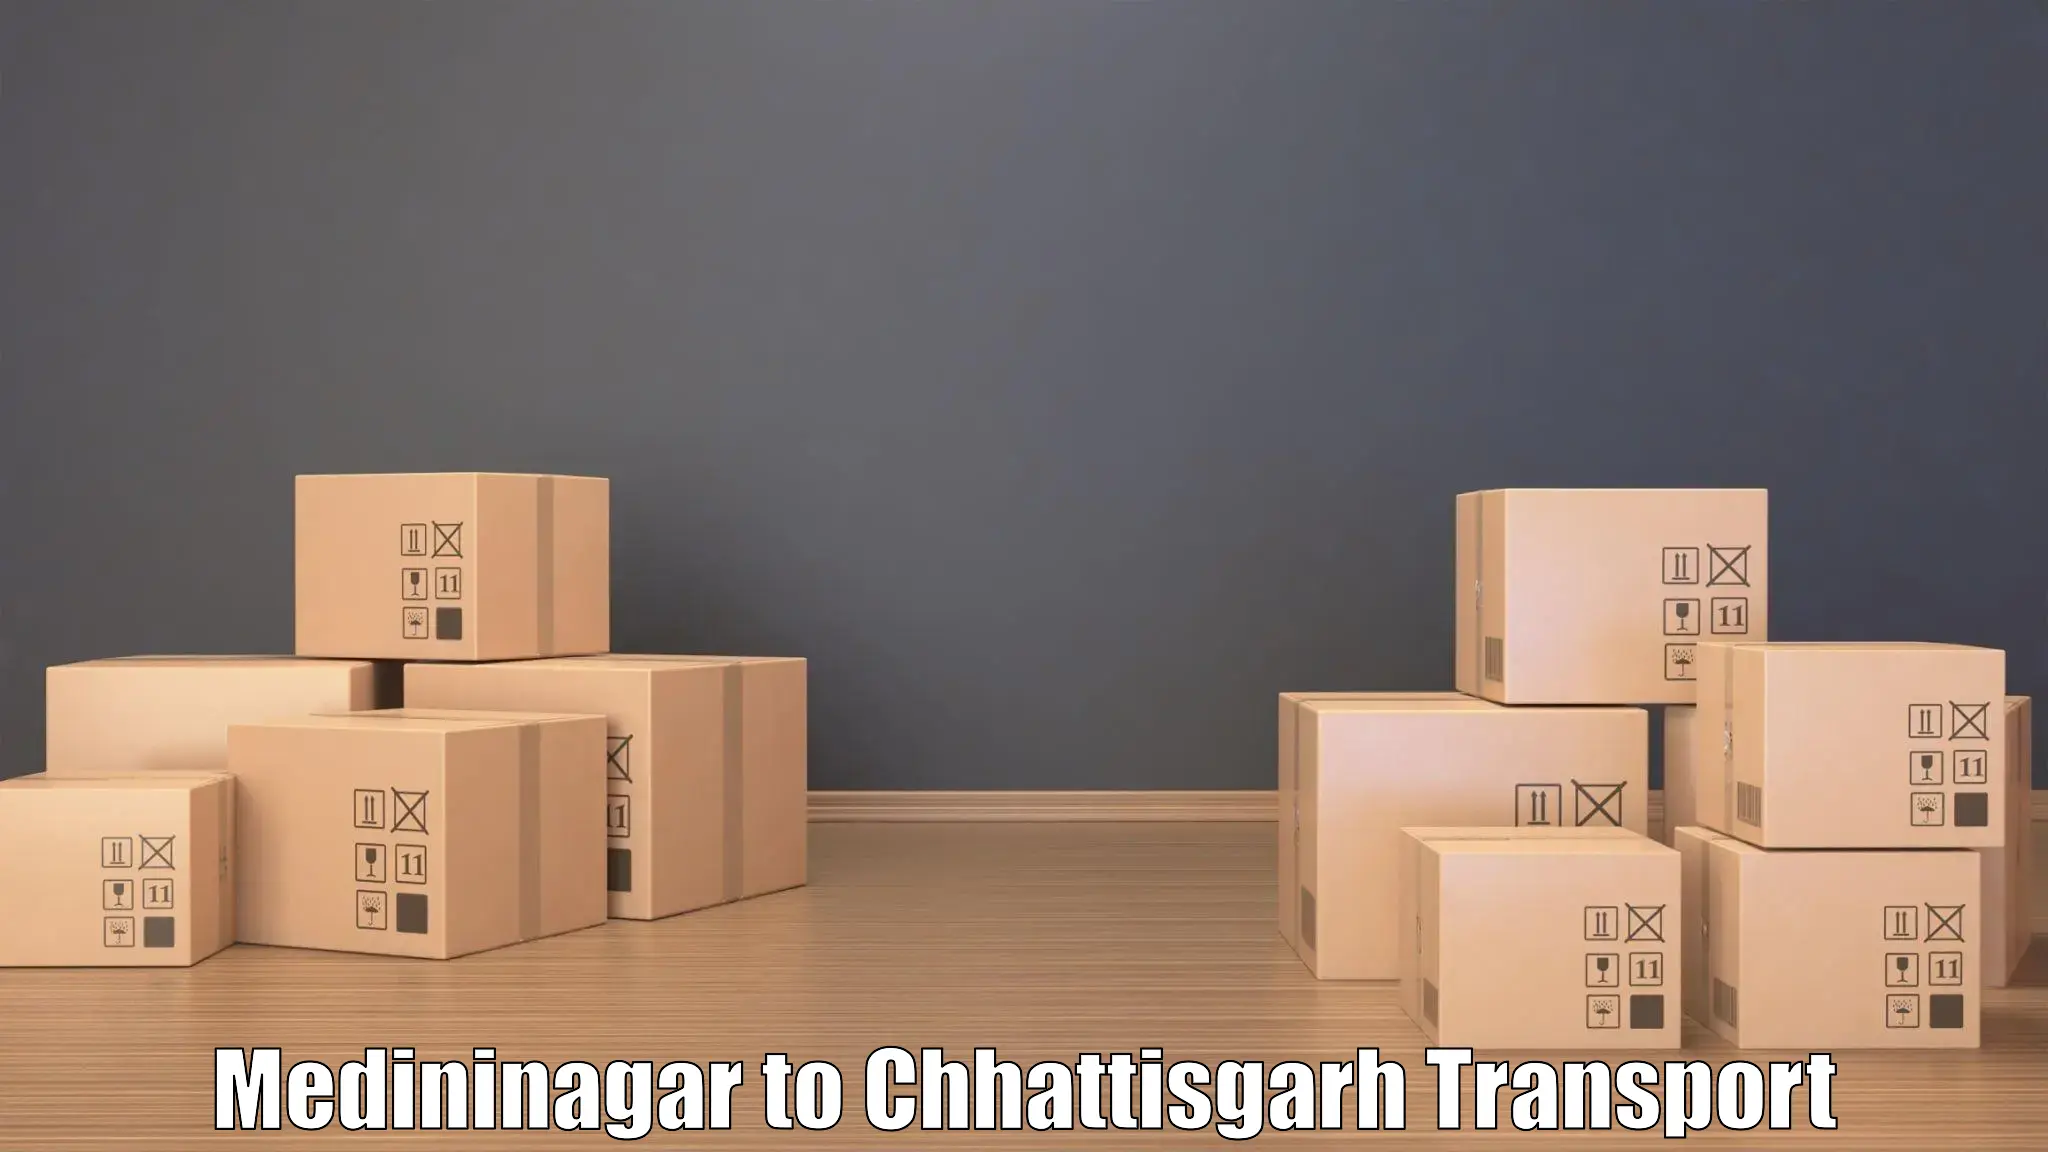 Express transport services Medininagar to Nagri